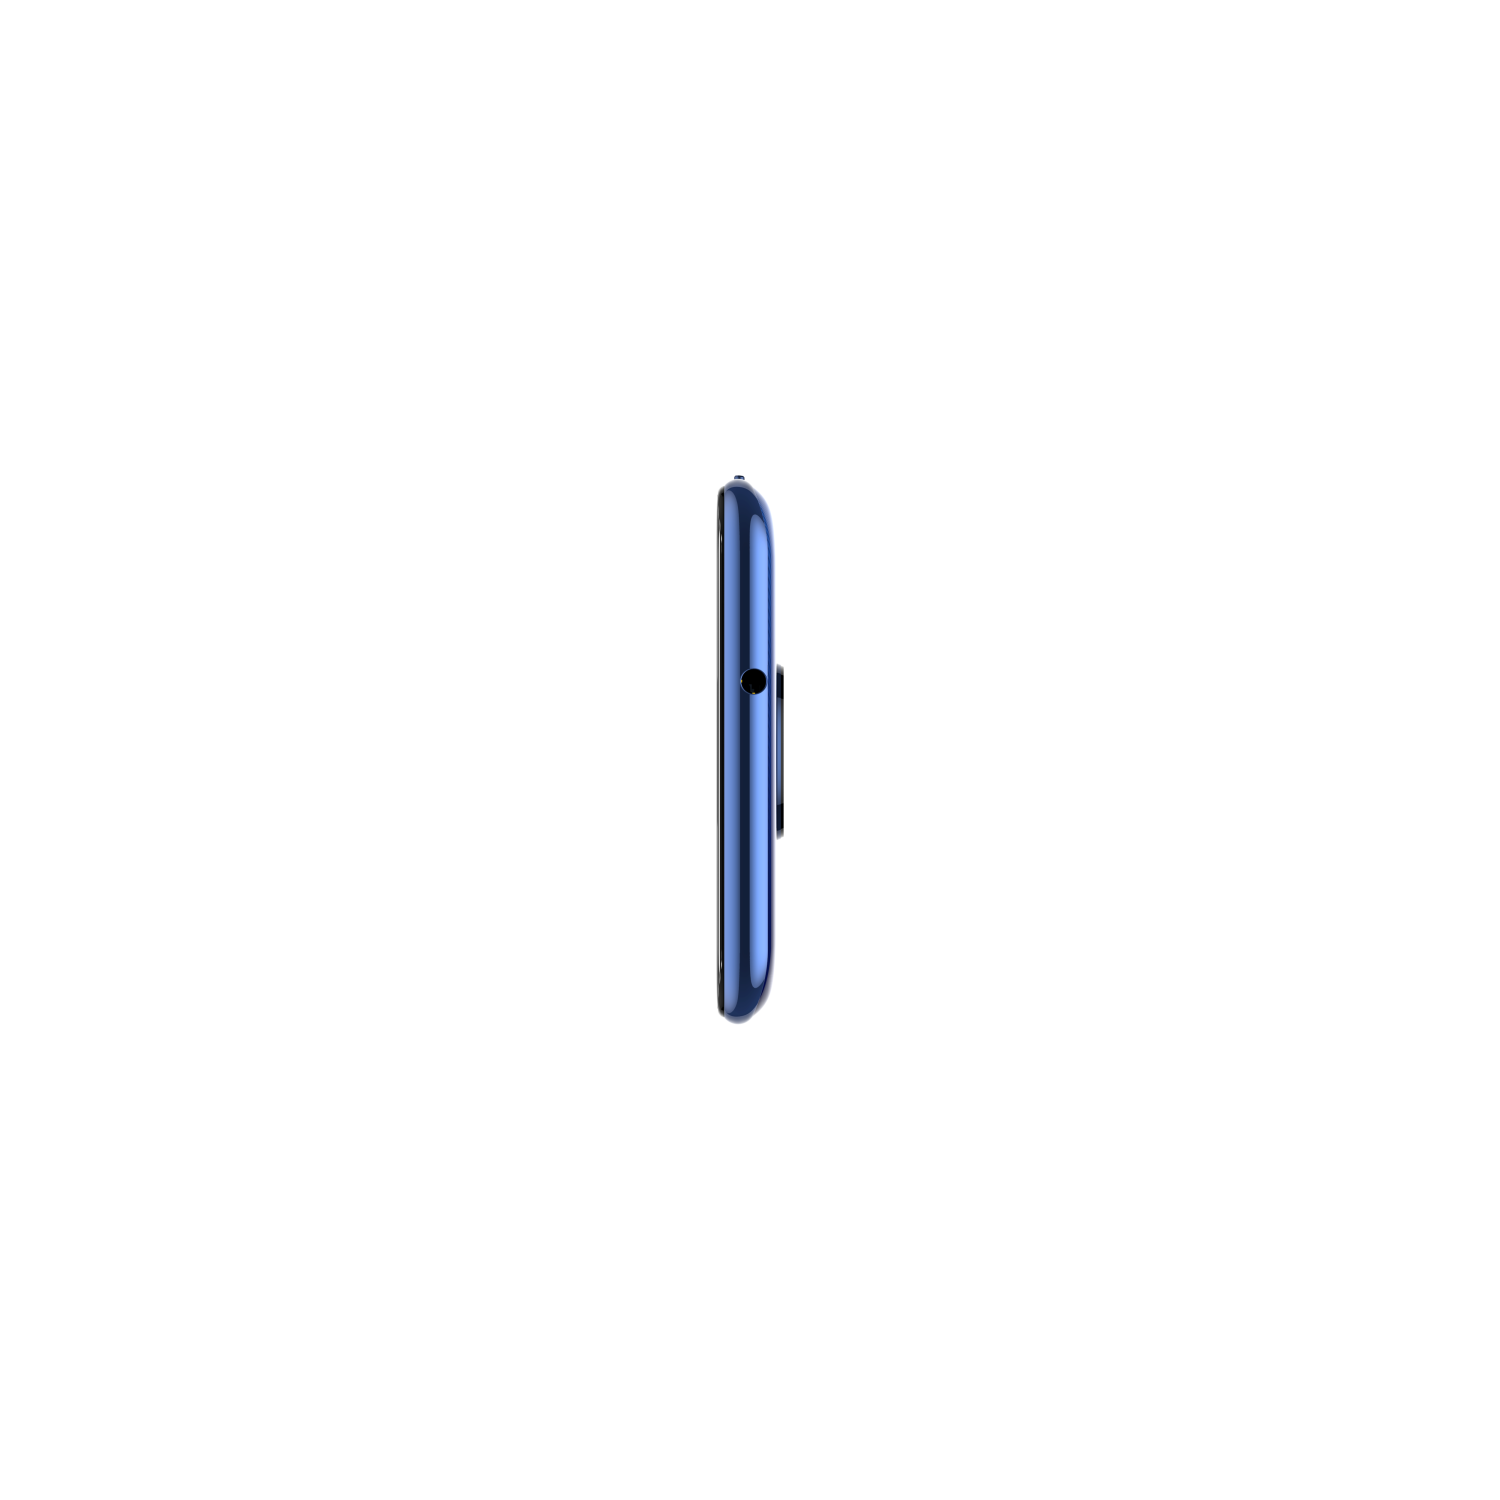 Doogee X95 3GB/16GB modrá